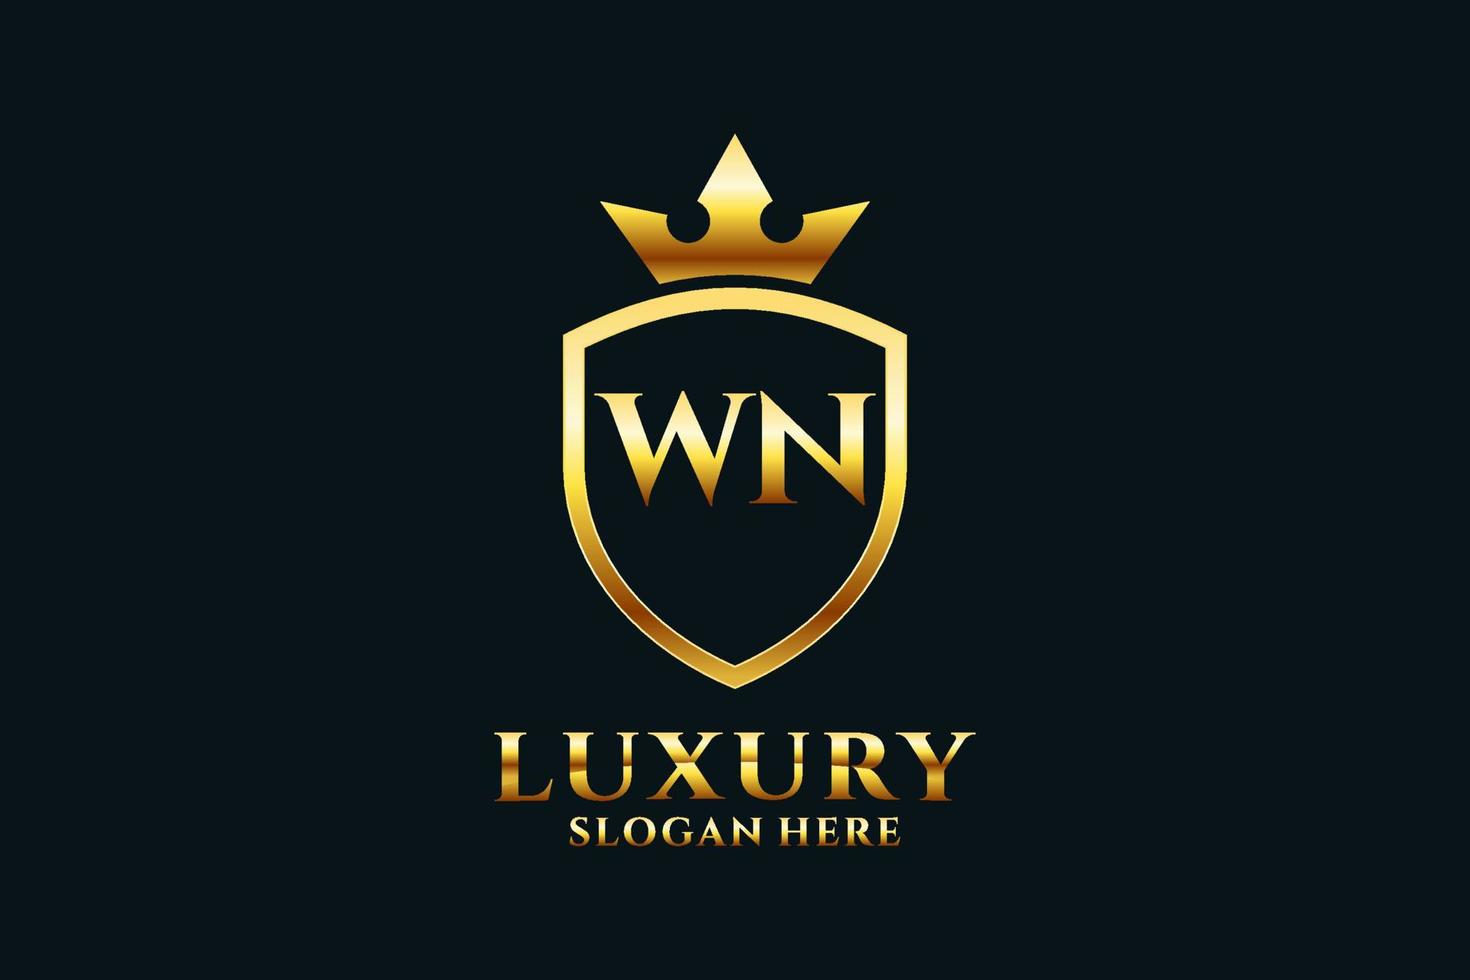 logo monogramme de luxe élégant initial wn ou modèle de badge avec volutes et couronne royale - parfait pour les projets de marque de luxe vecteur